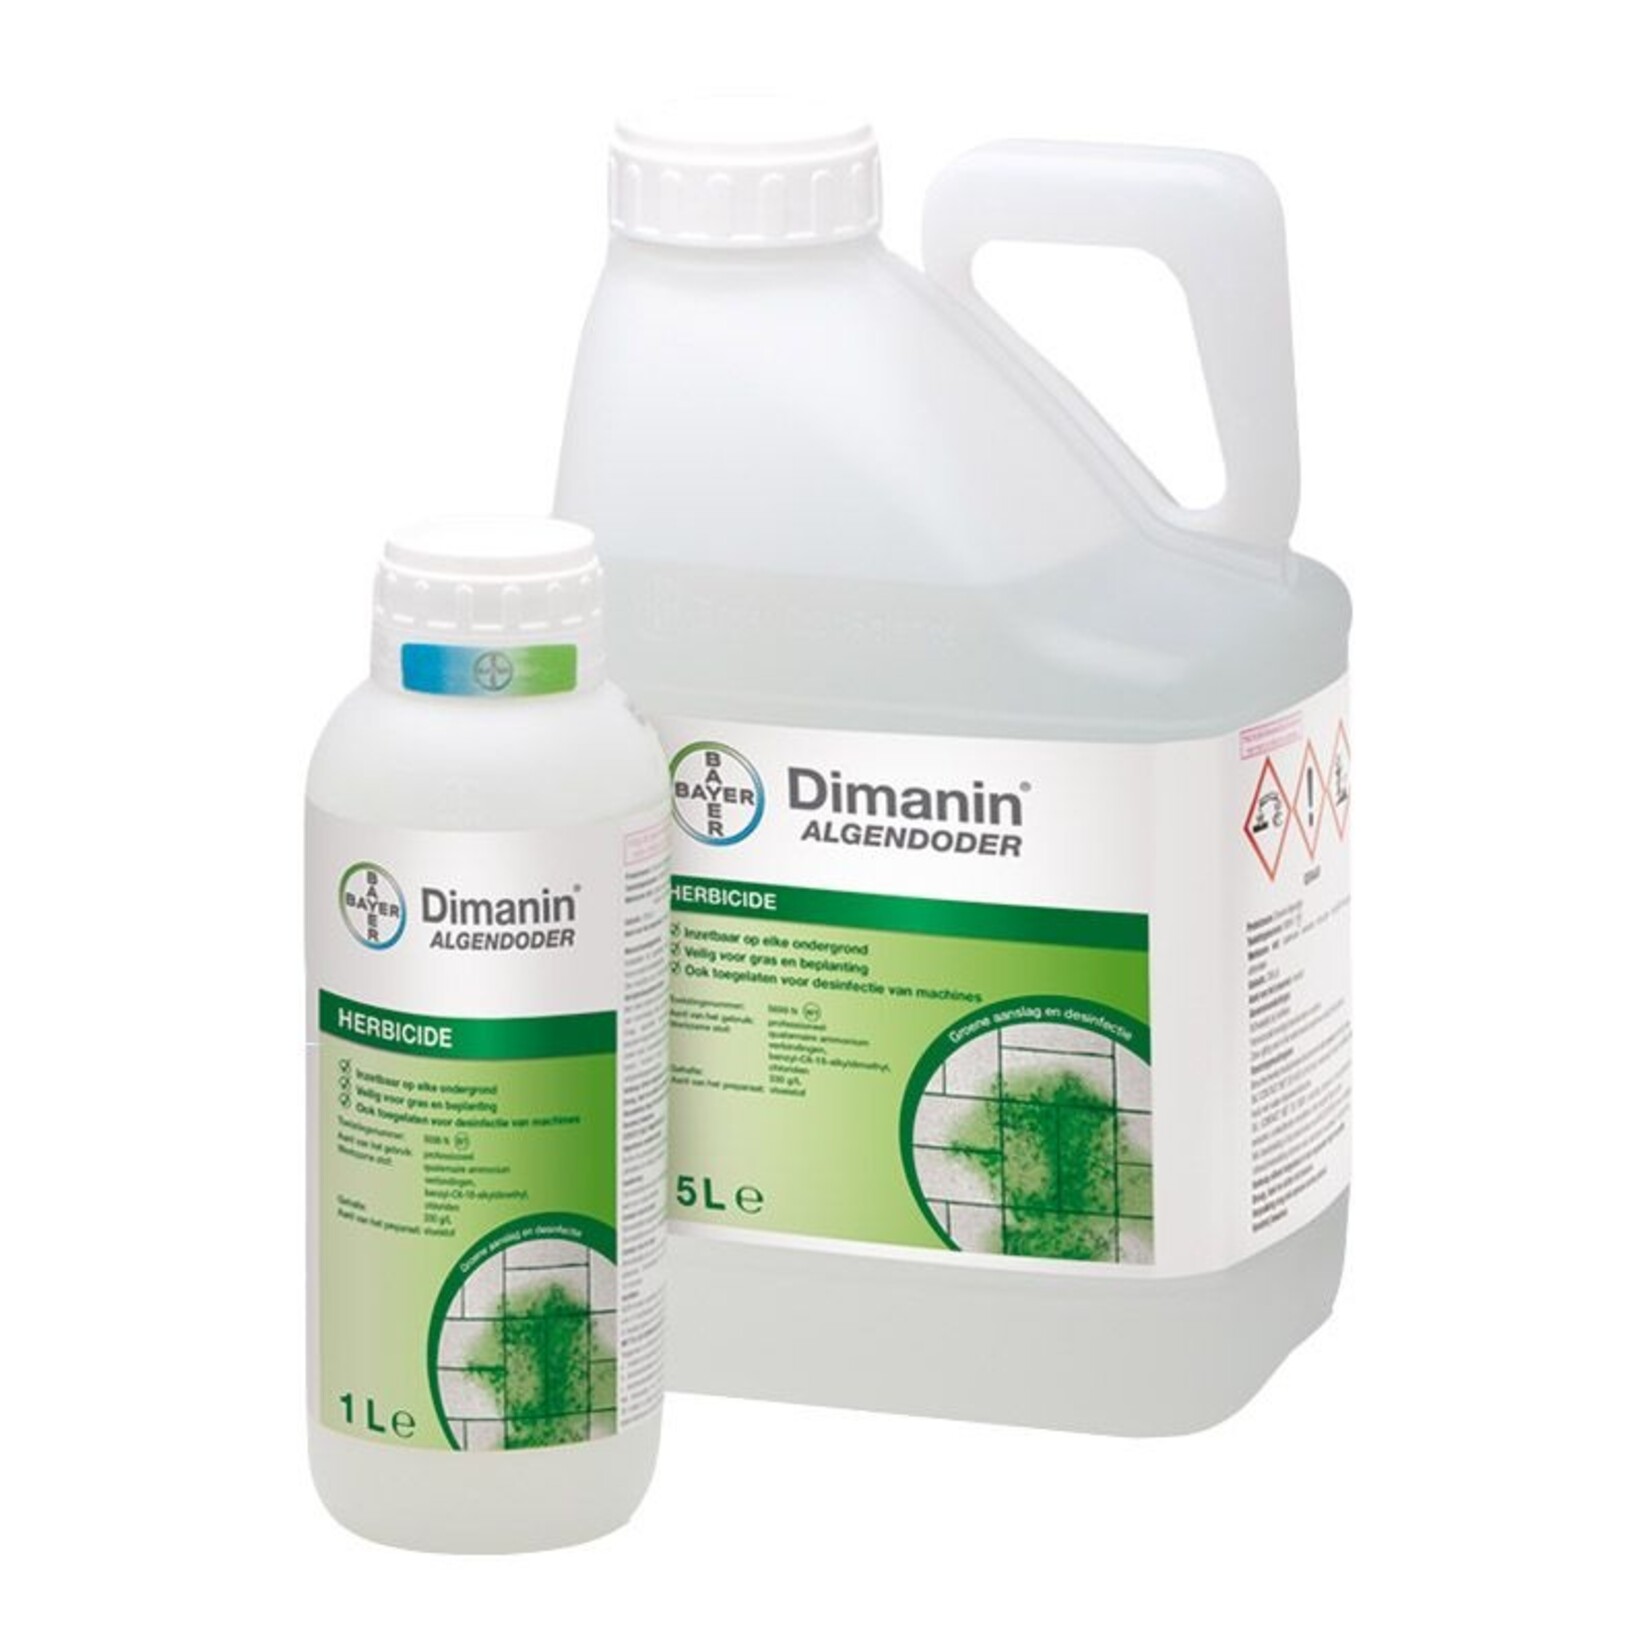 Bayer Garden Dimanin Algendoder 5 liter (concentraat) tegen groene aanslag